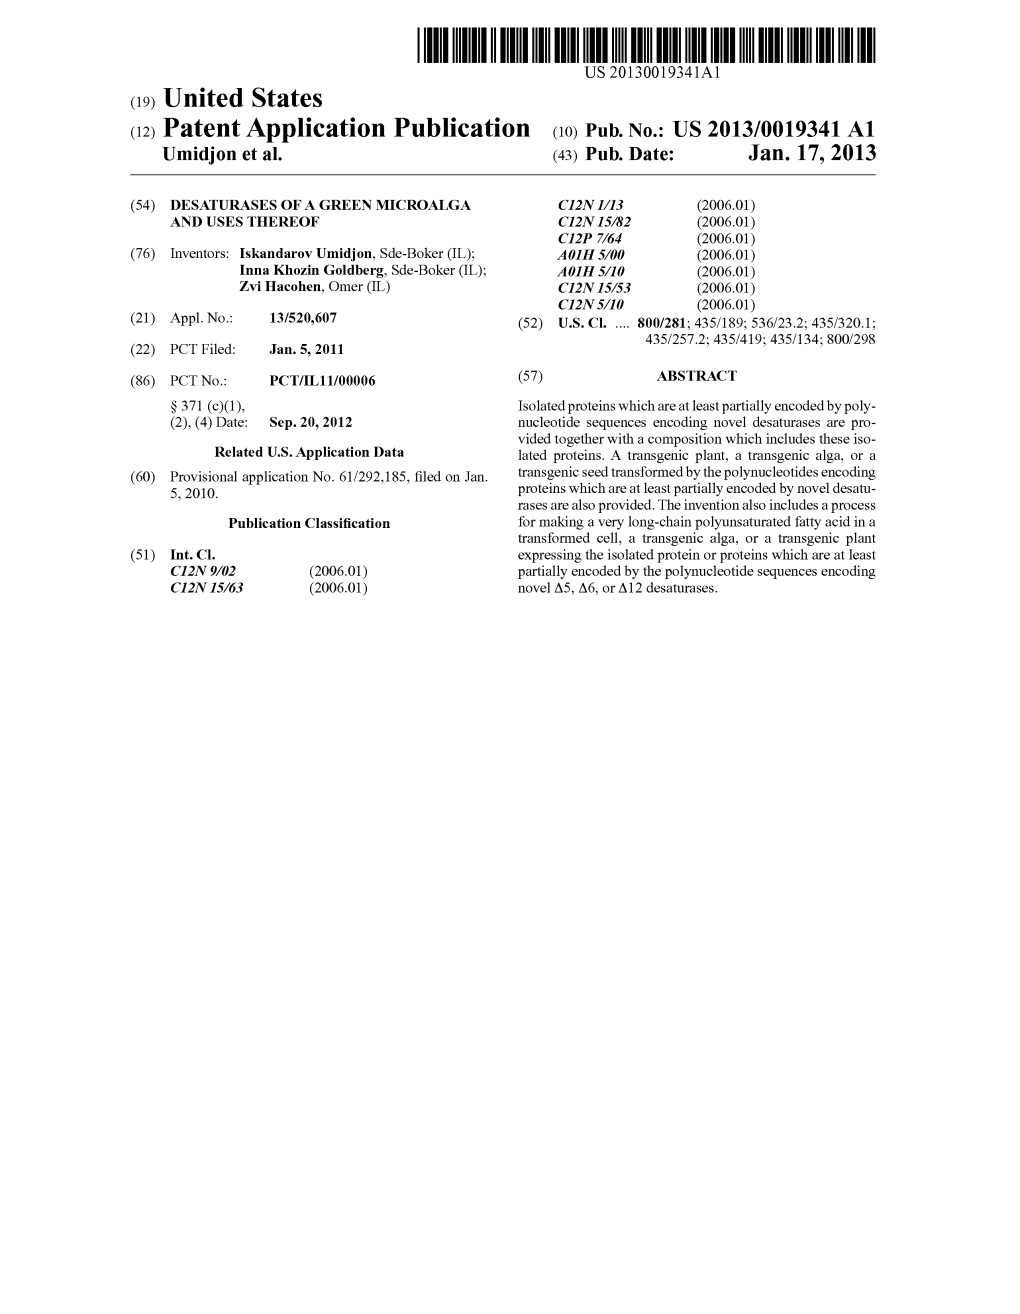 (12) Patent Application Publication (10) Pub. No.: US 2013/0019341 A1 Umidjon Et Al